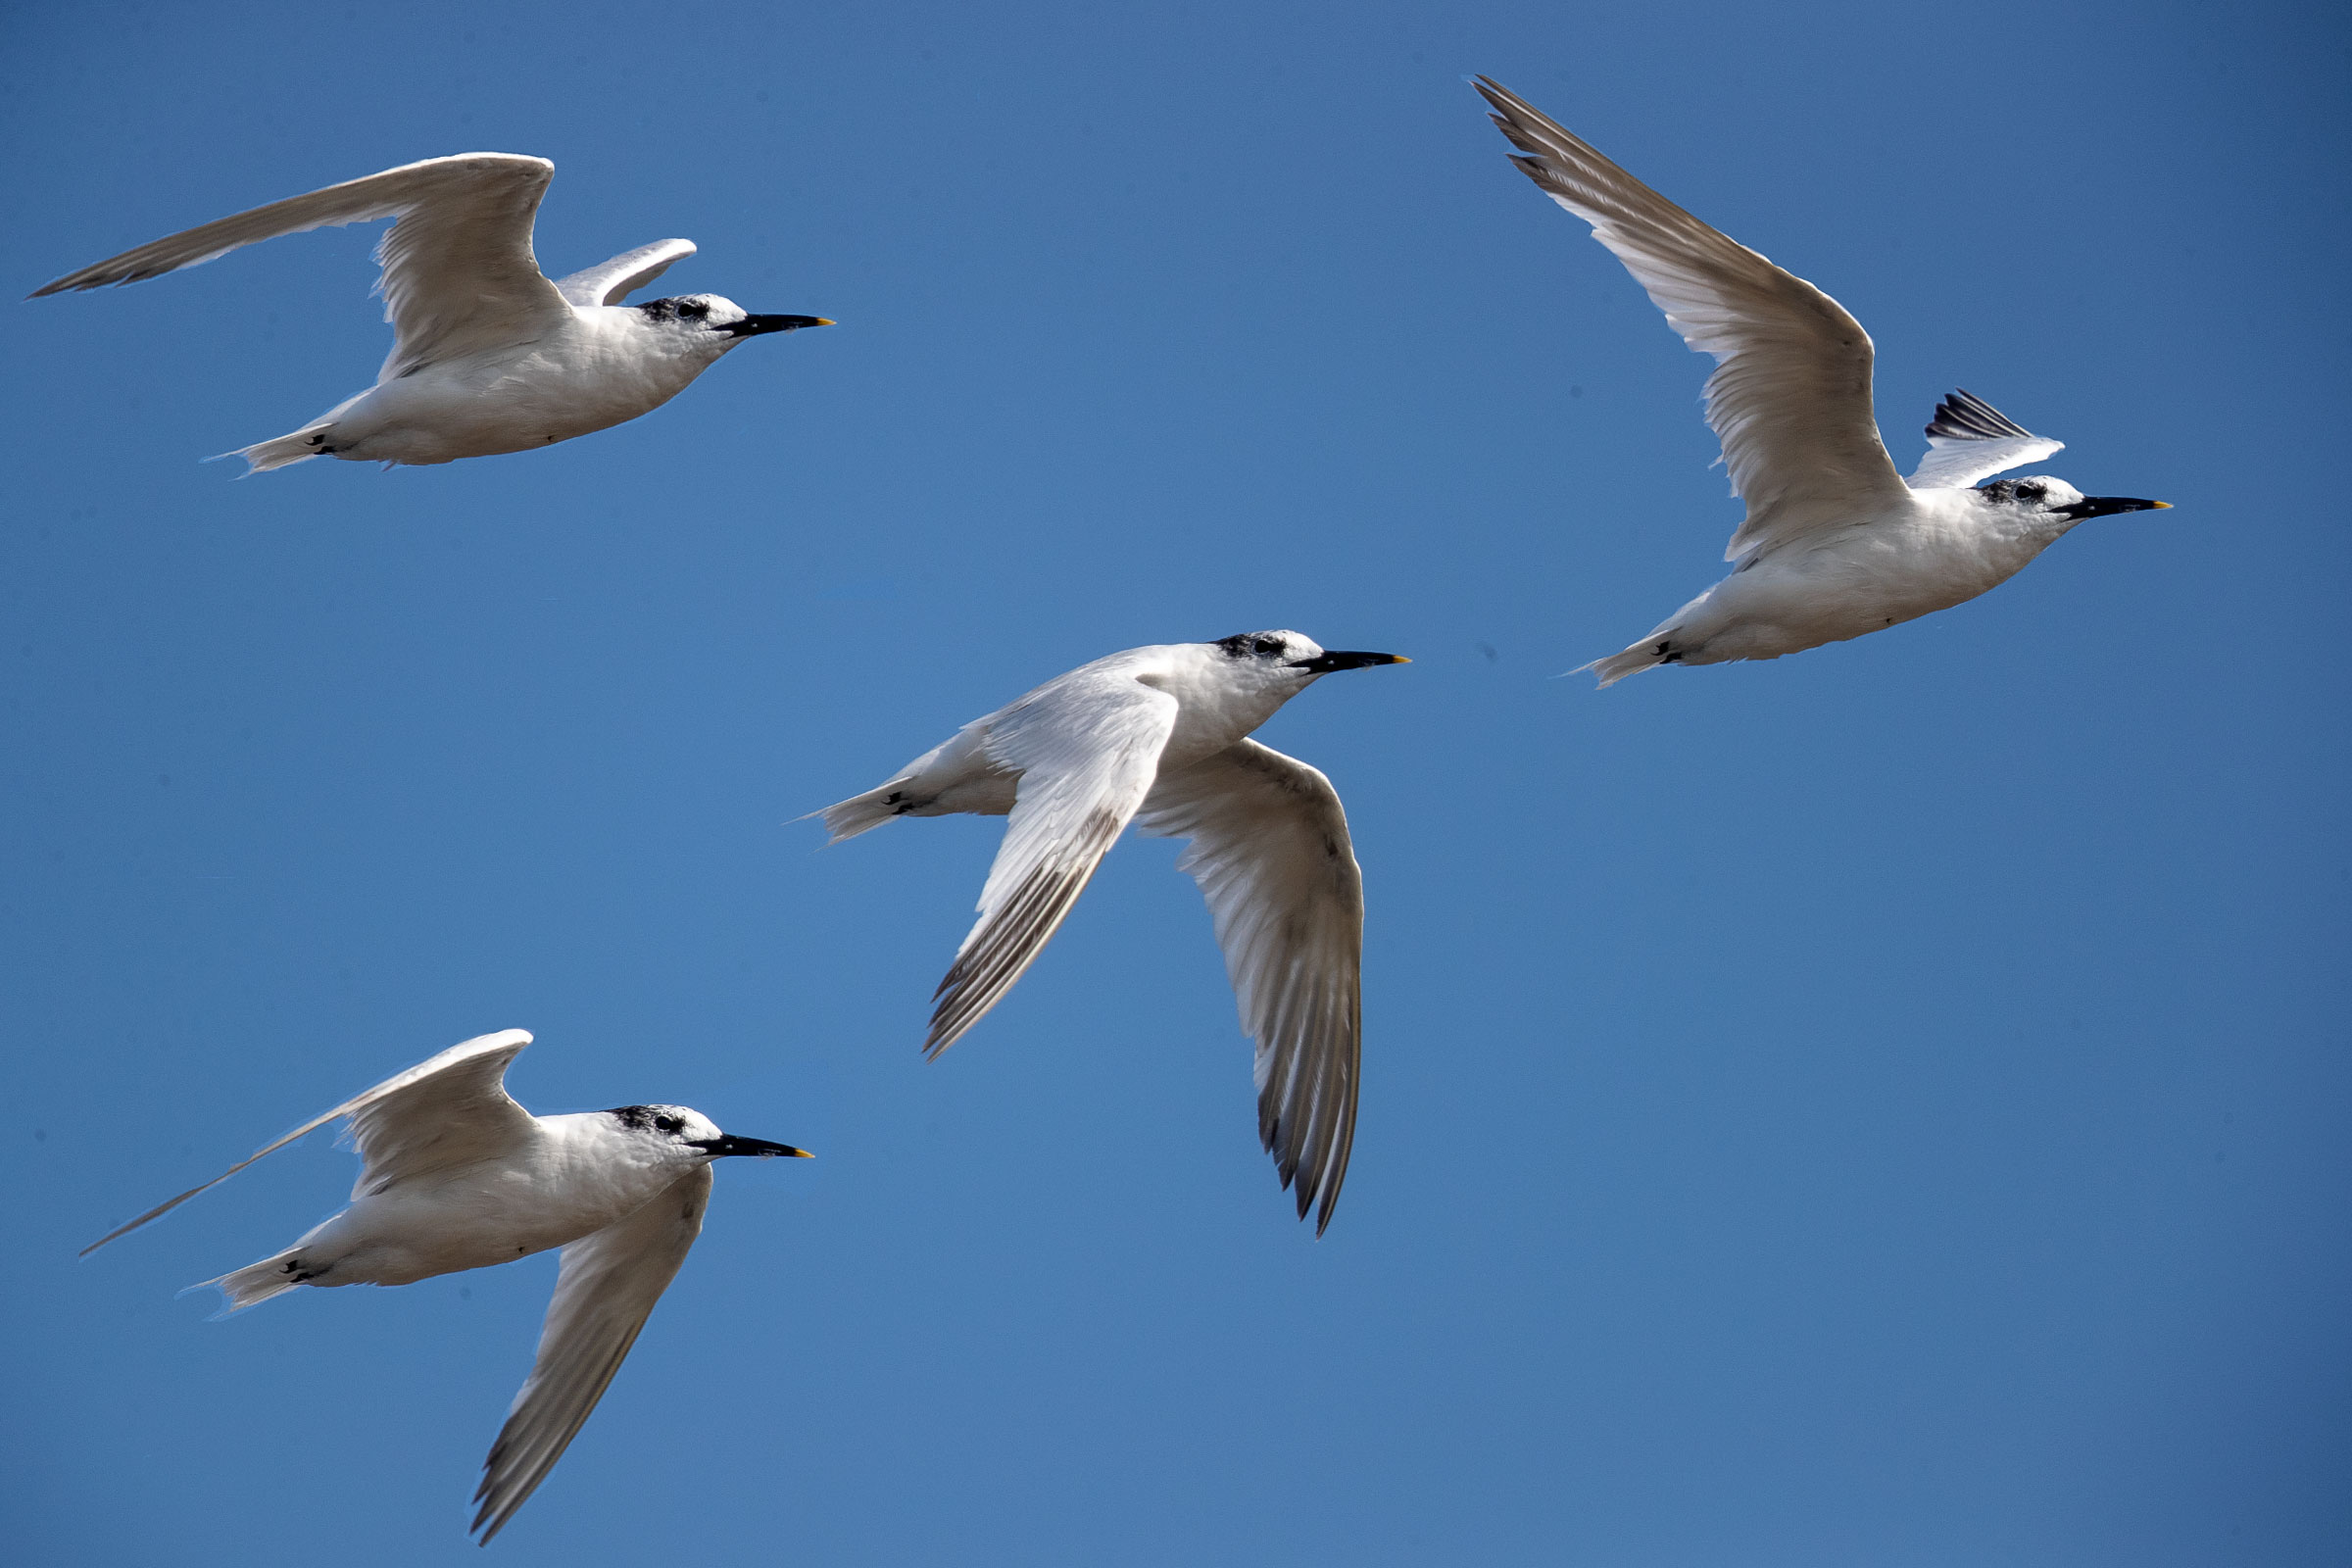 The flight of the Sandwich Tern...